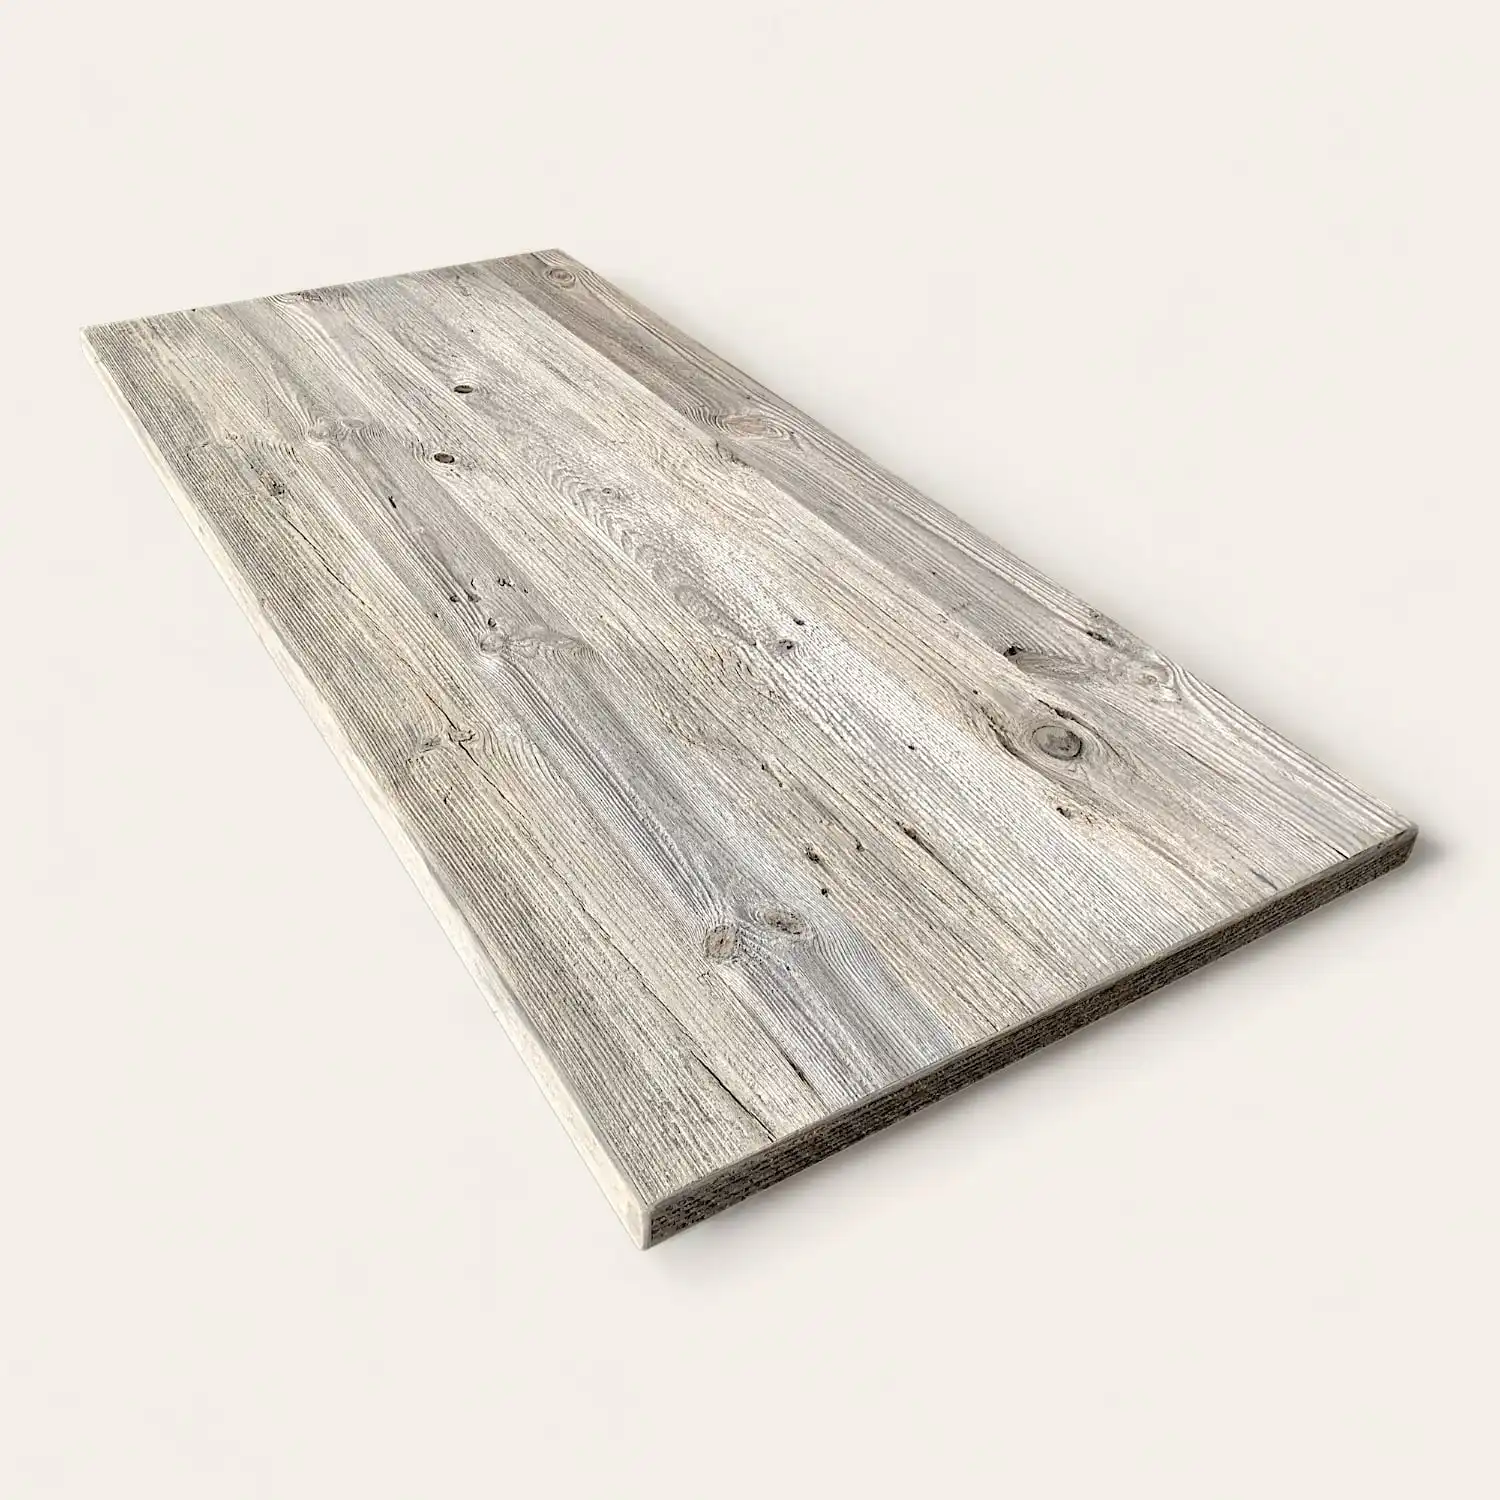  Une image d'une table rustique en bois sur une surface blanche. 